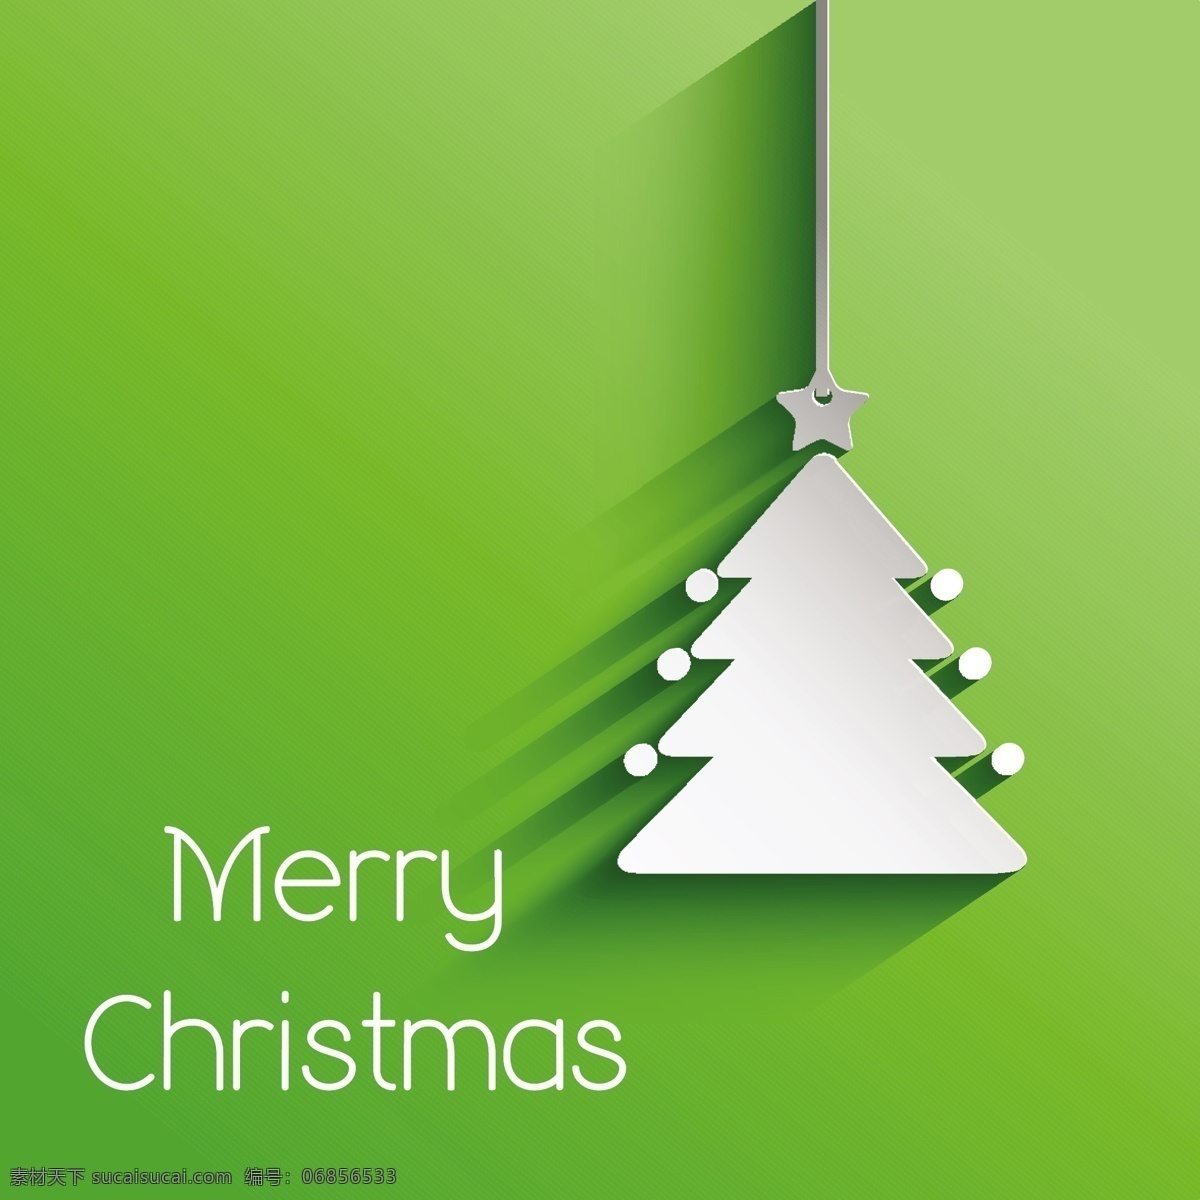 圣诞树的背景 背景 圣诞树 纸 卡 纹理 绿色 圣诞快乐 冬天快乐 绿色的背景 圣诞背景 圣诞卡 圣诞 庆祝 节日 纸张的纹理 节日快乐 冬天的背景